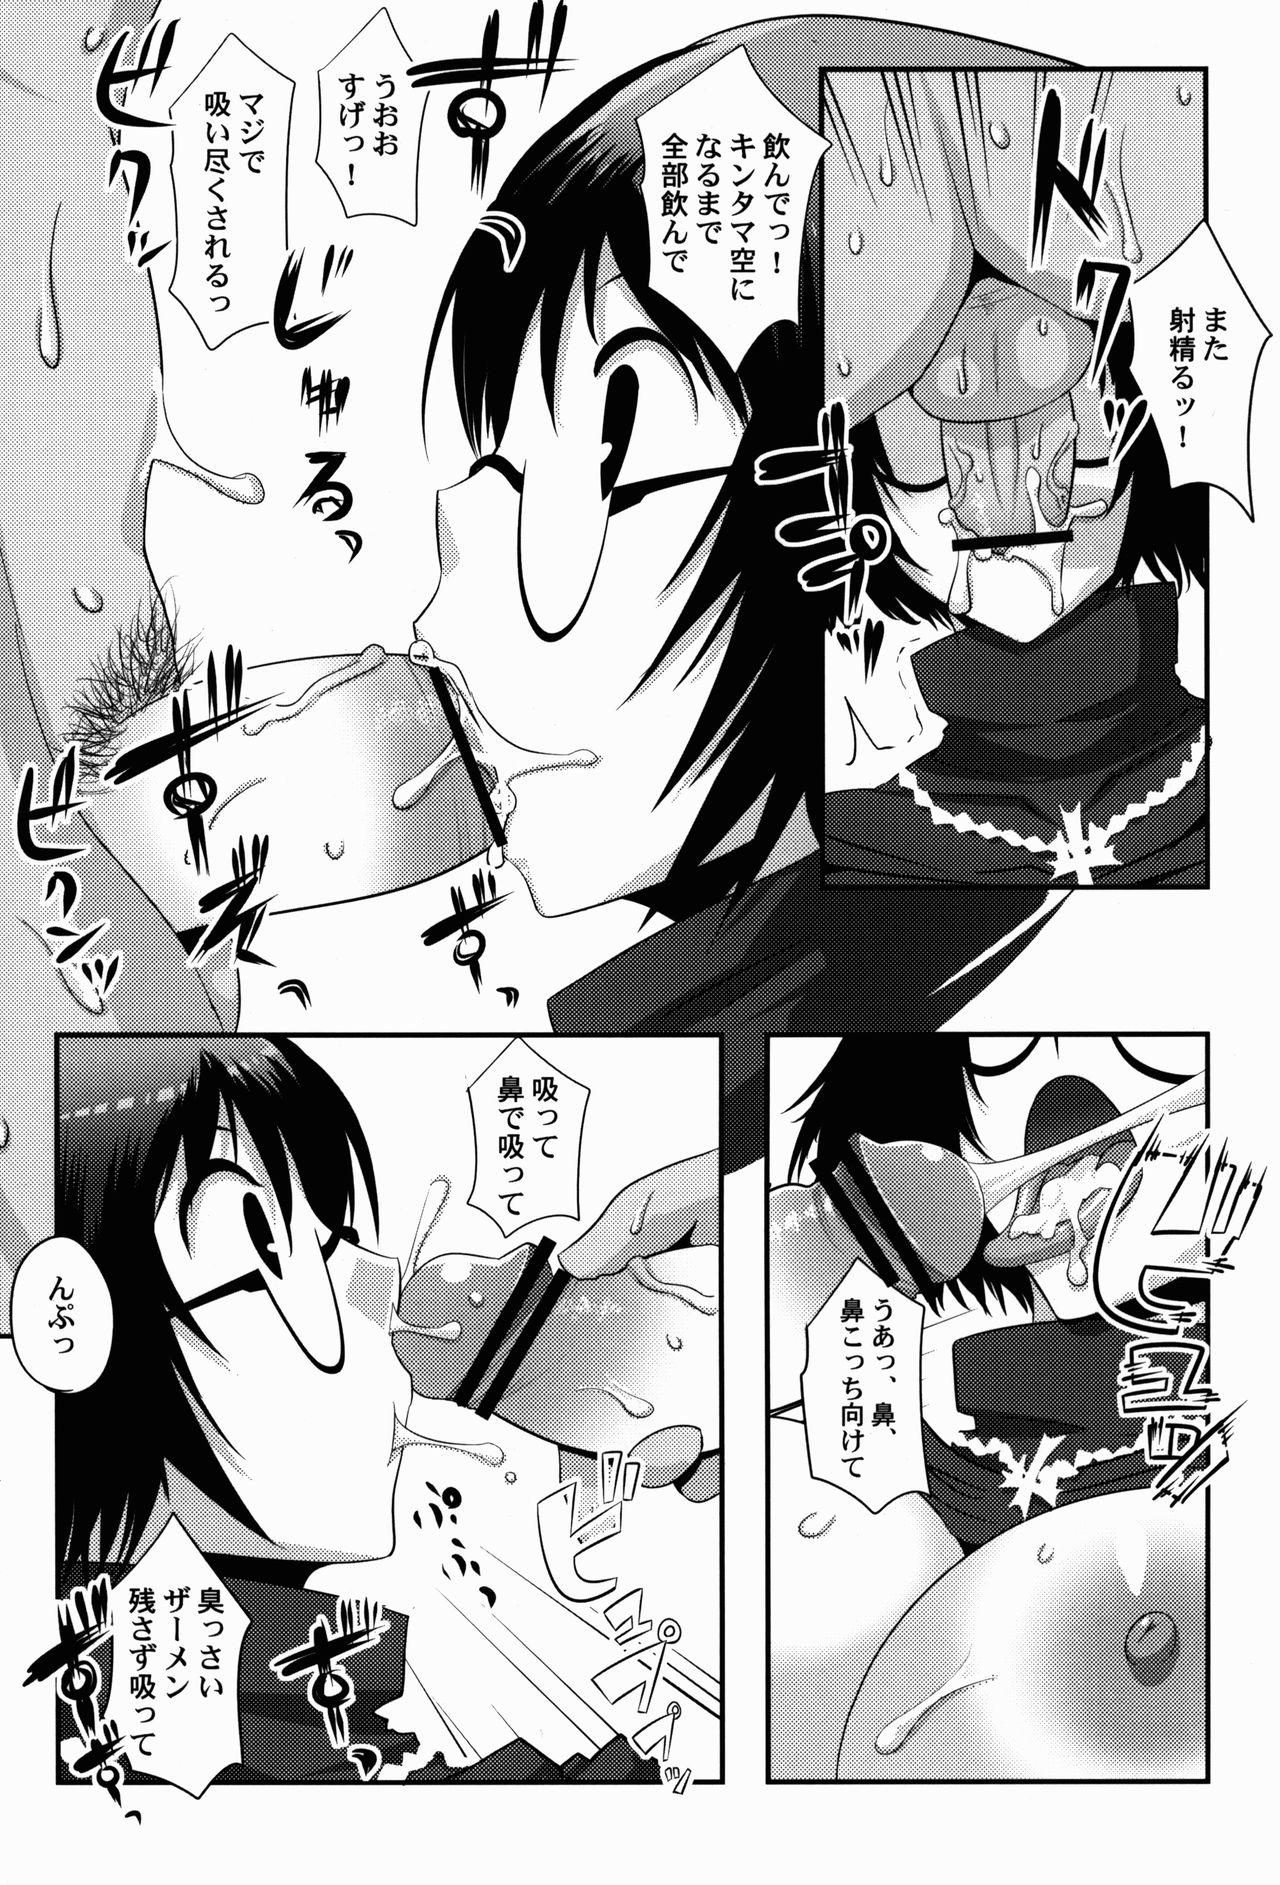 Assfucking Gugenka-kei Joshi!! - Hunter x hunter Nurarihyon no mago Anime - Page 9